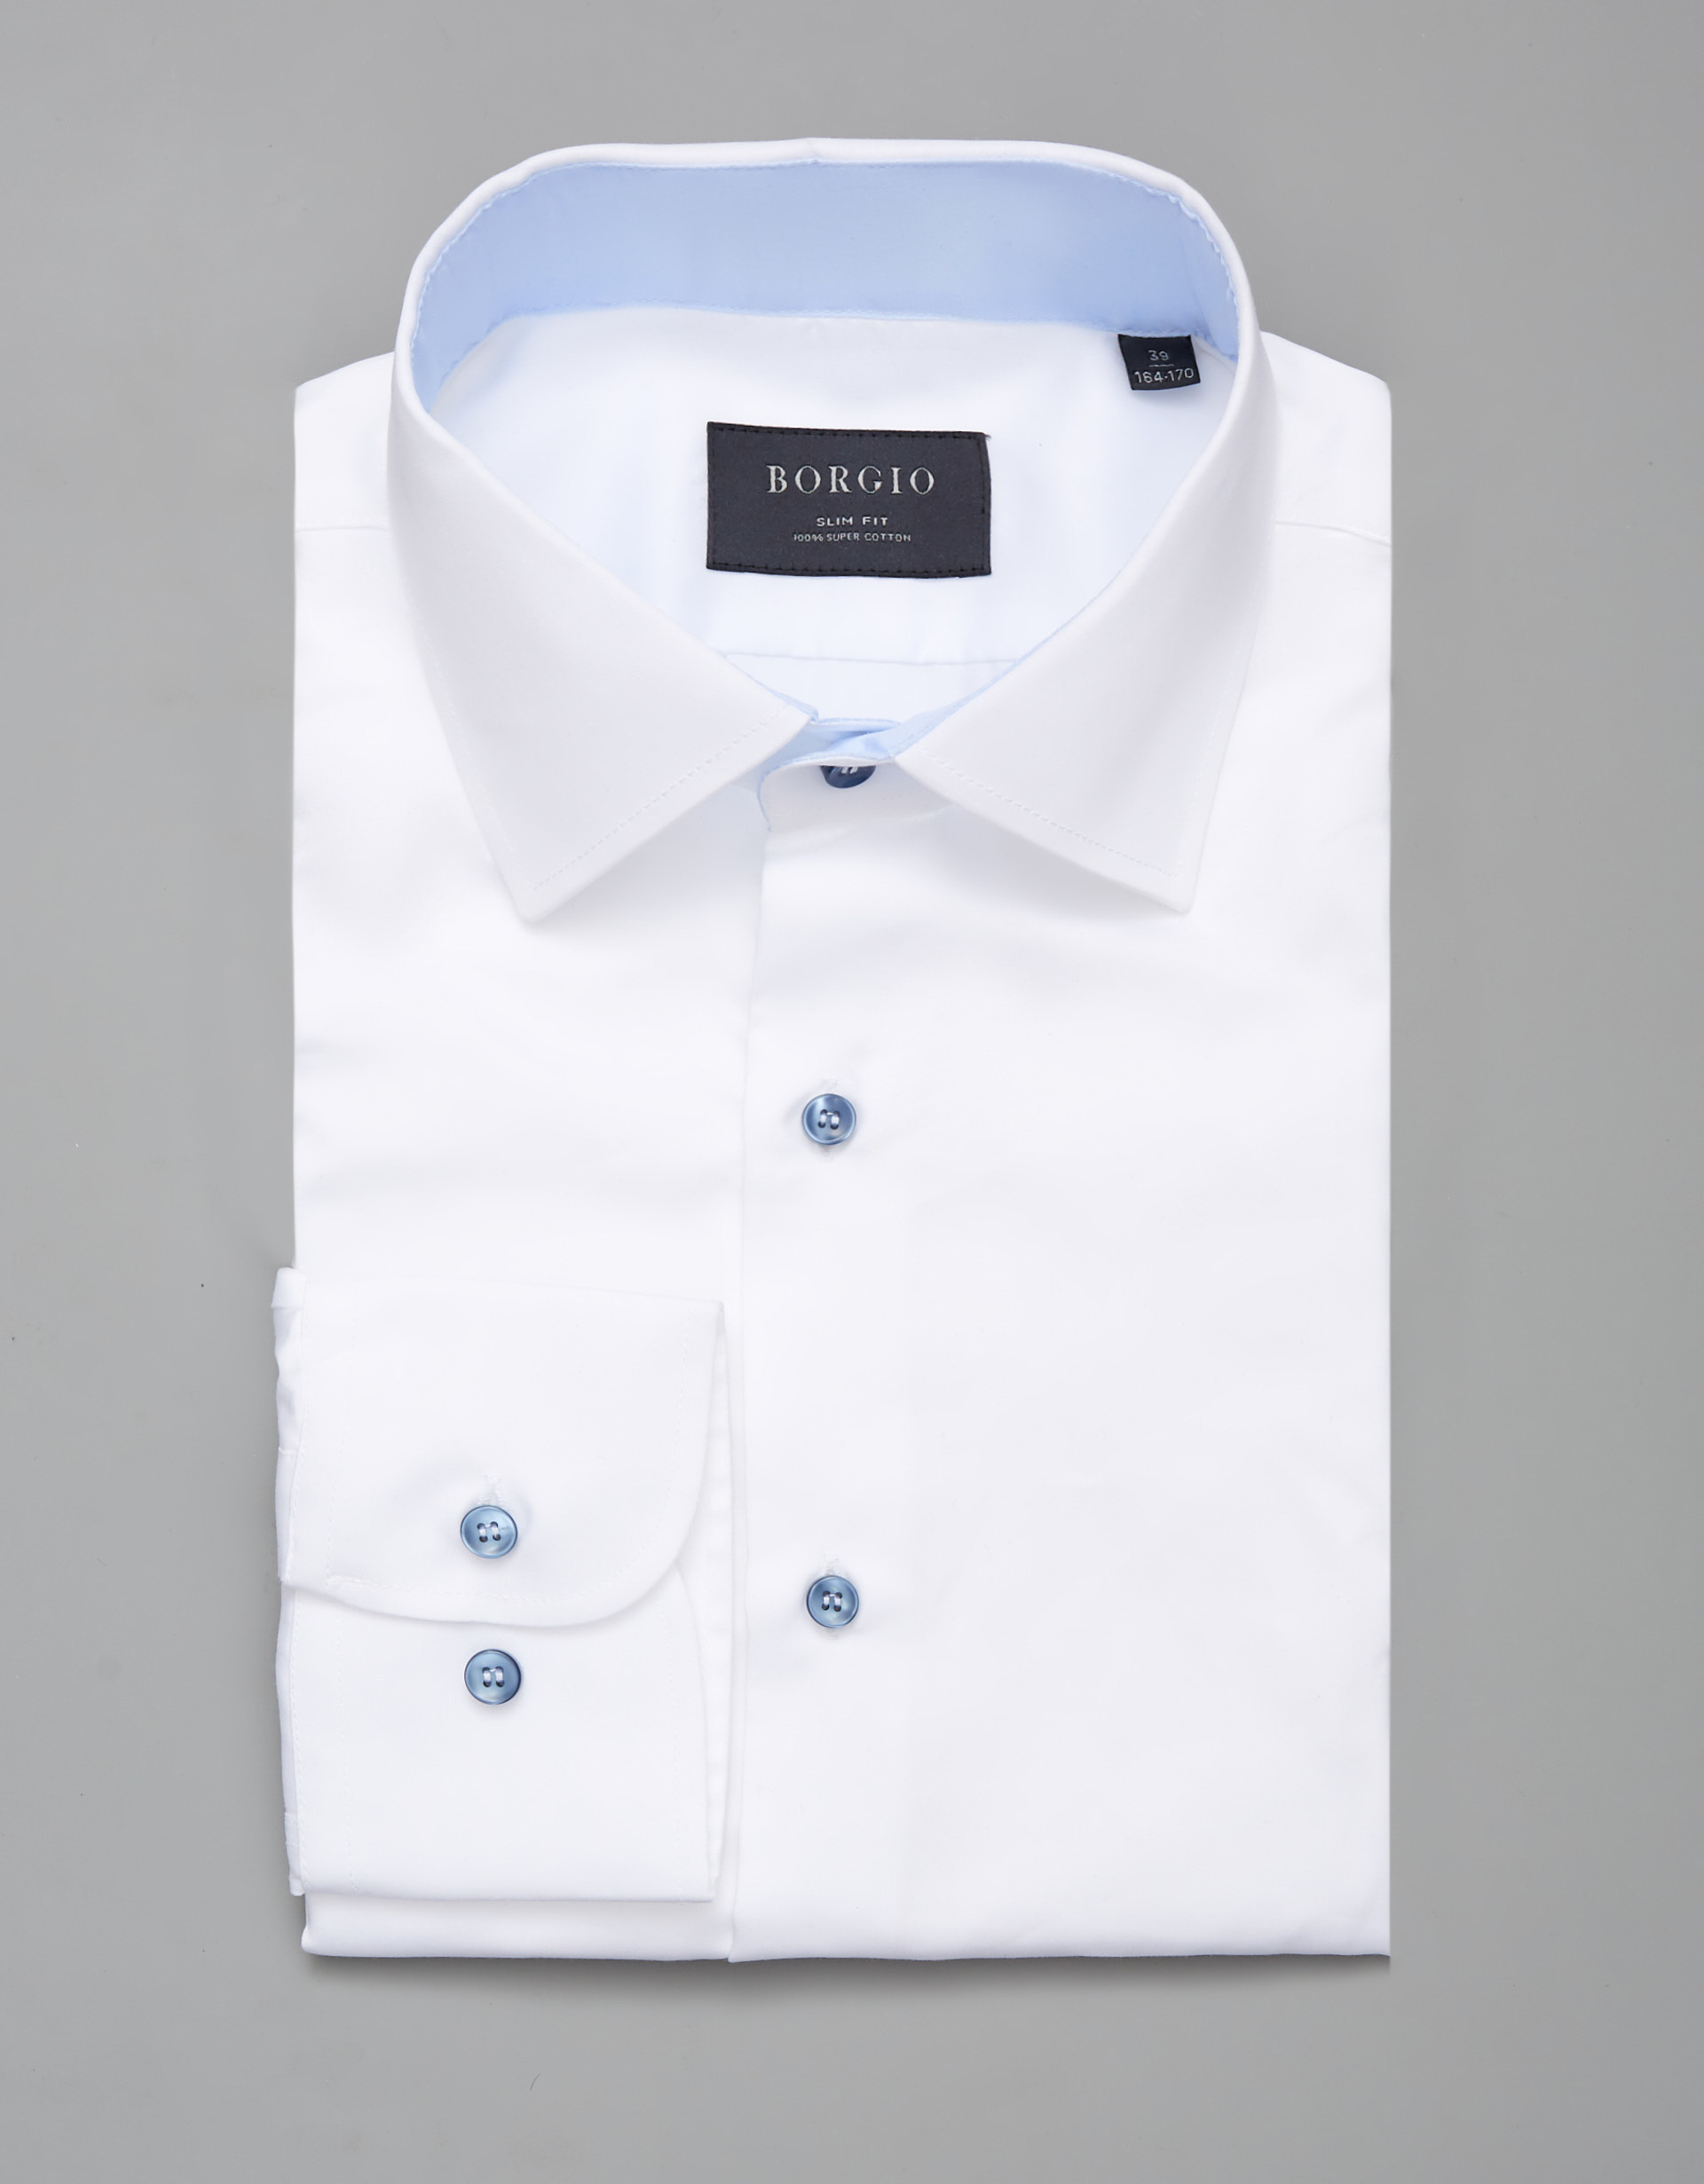 Borgio koszula vallerona 00251 długi rękaw biały slim fit